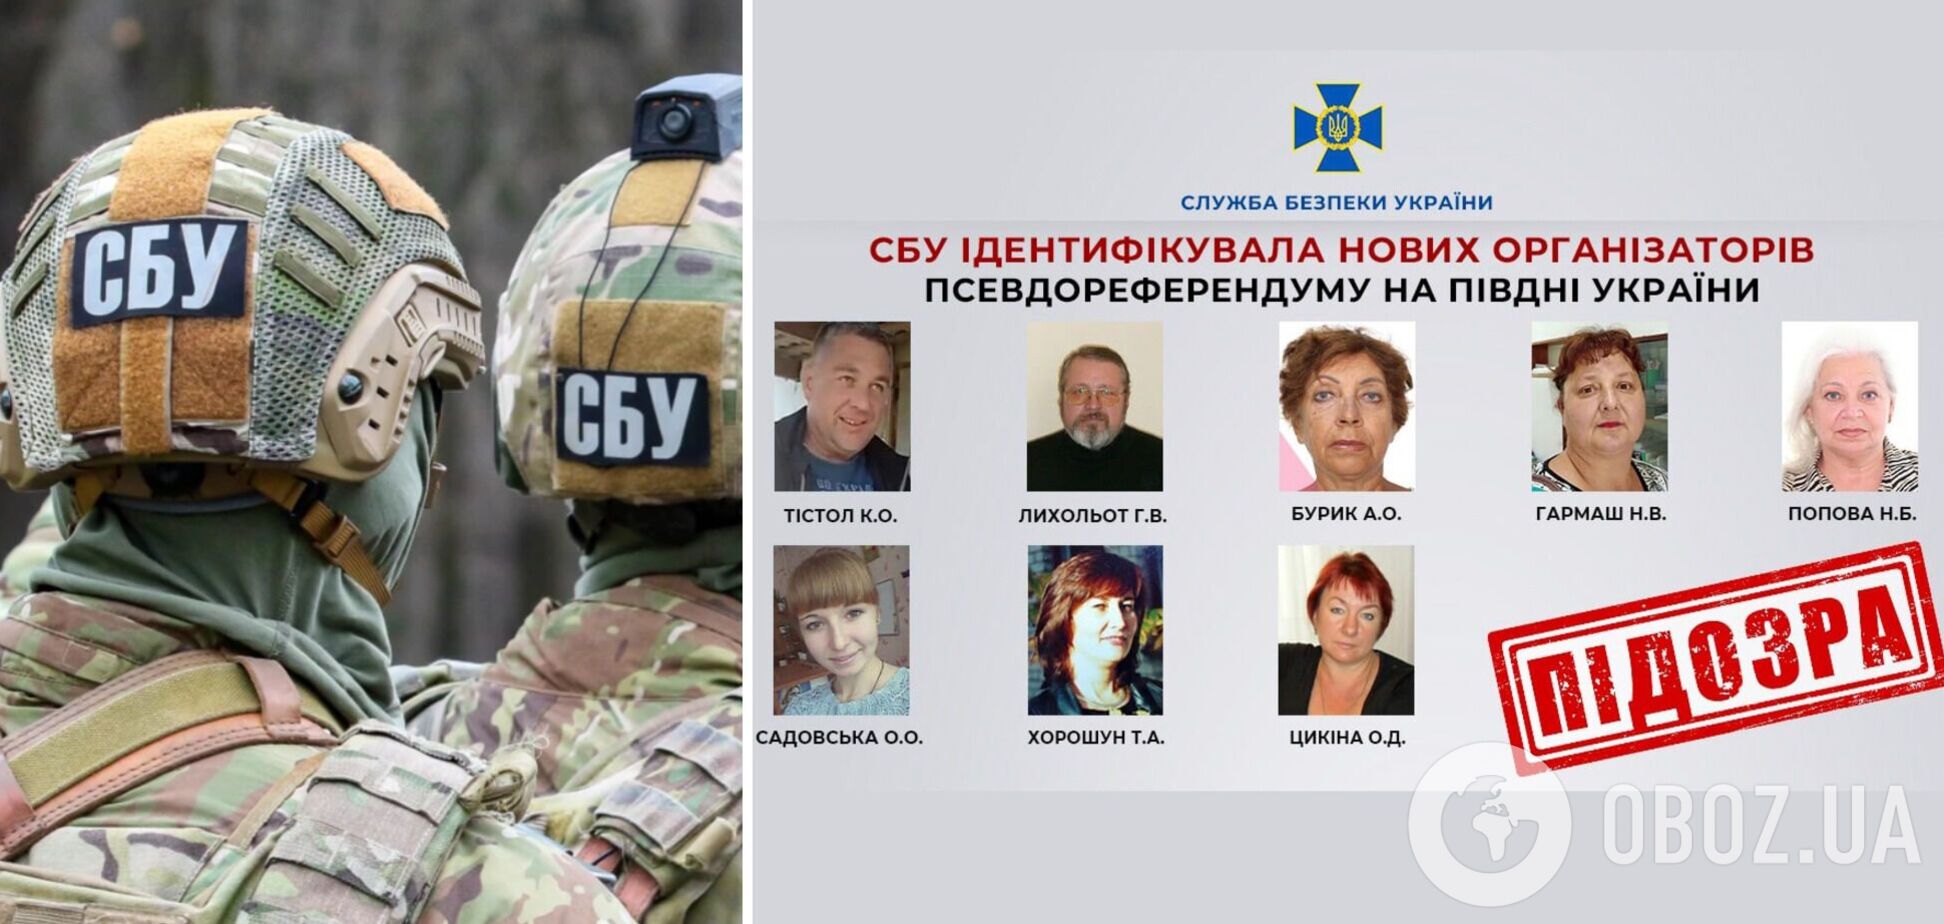 СБУ установила личности еще восьми организаторов 'референдума' на юге Украины, которые помогали путинской аннексии. Фото